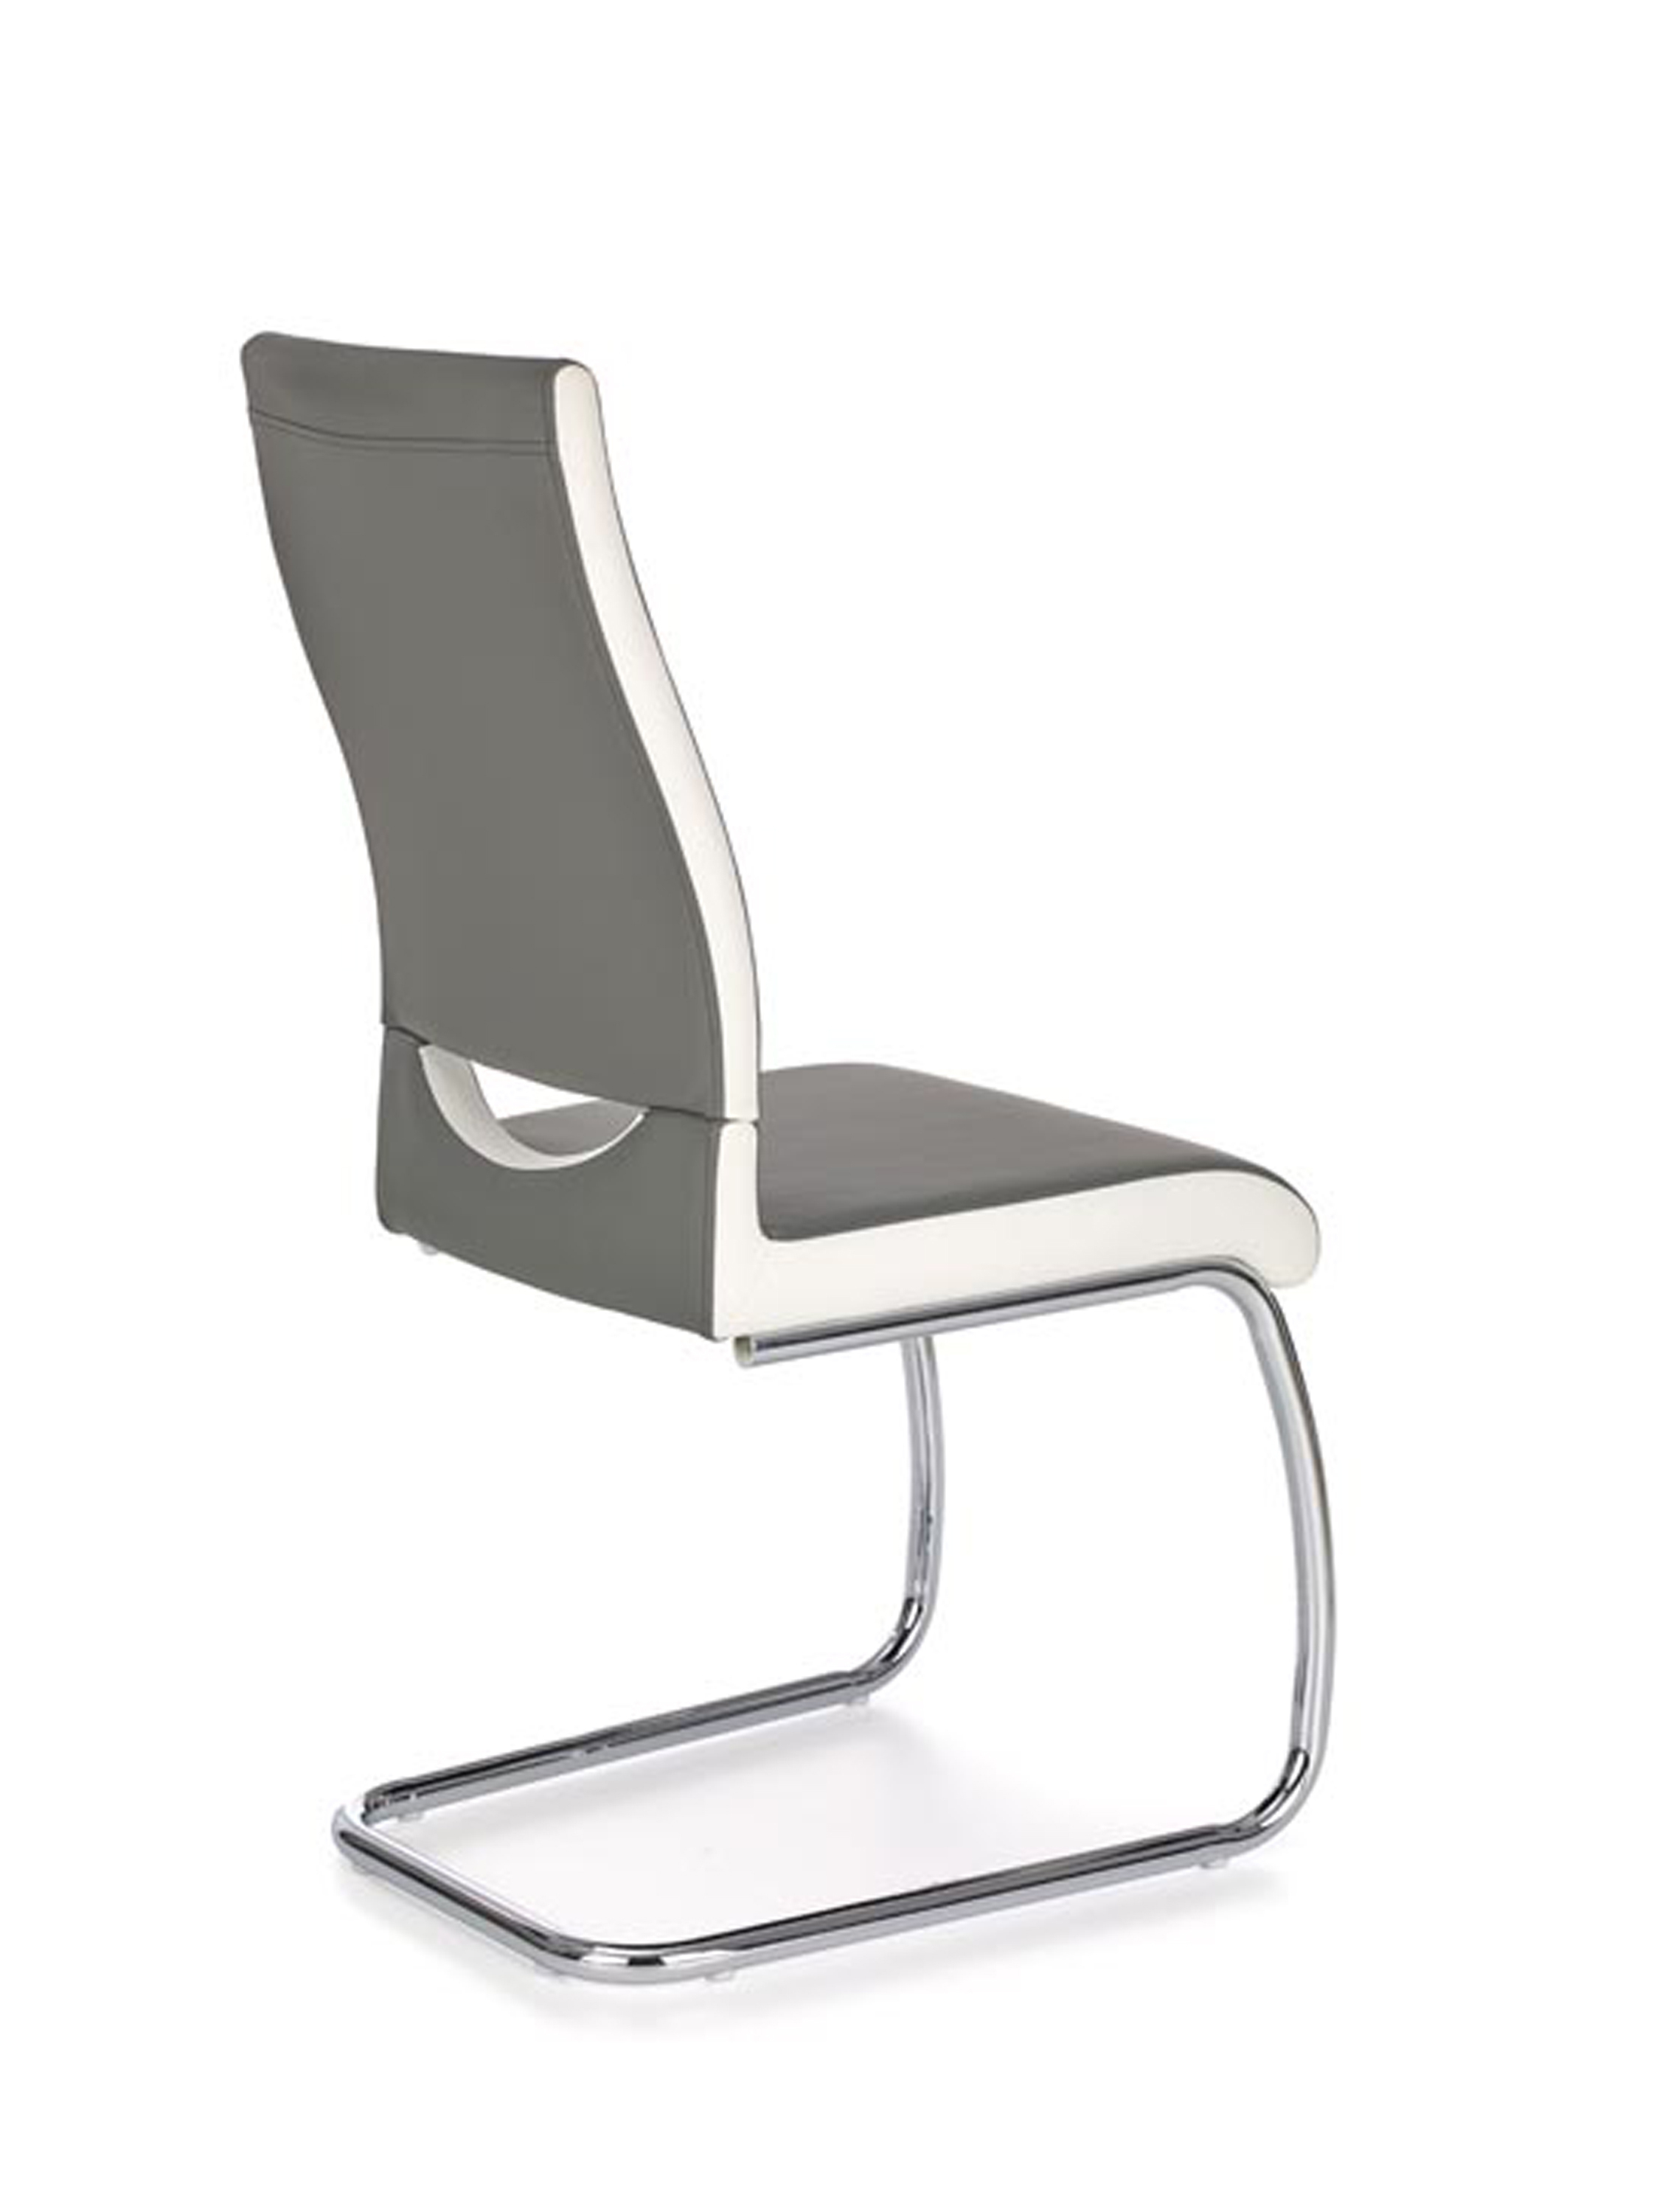 K259 krzesło popiel / biały (2p=4szt)